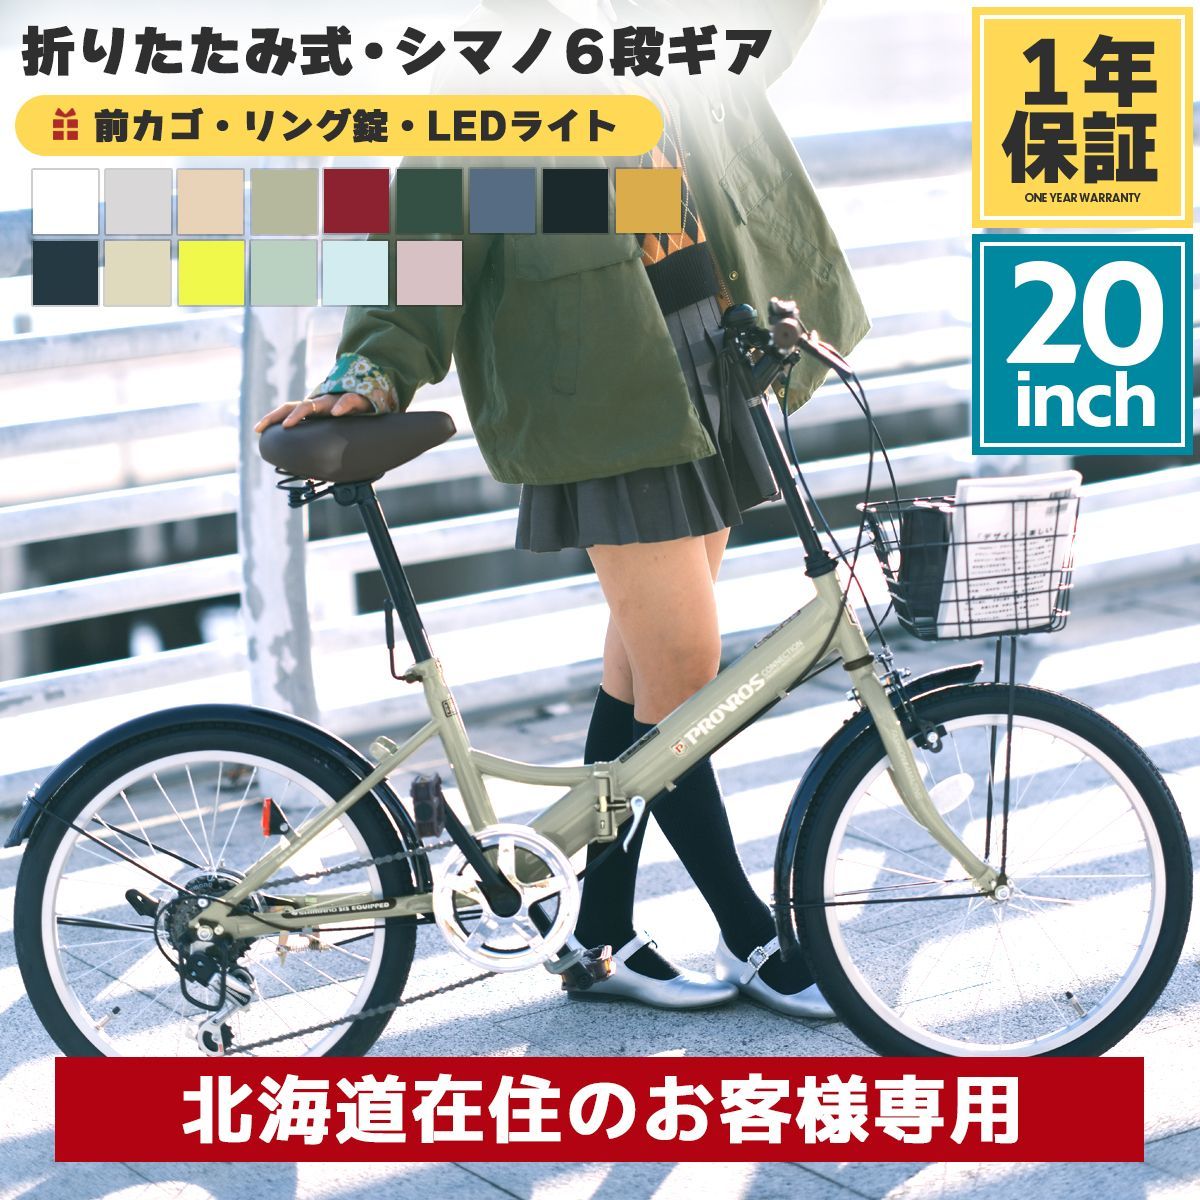 20インチ 折りたたみ 自転車 シマノ 6段変速 鍵 カゴ75kg未満タイヤサイズ